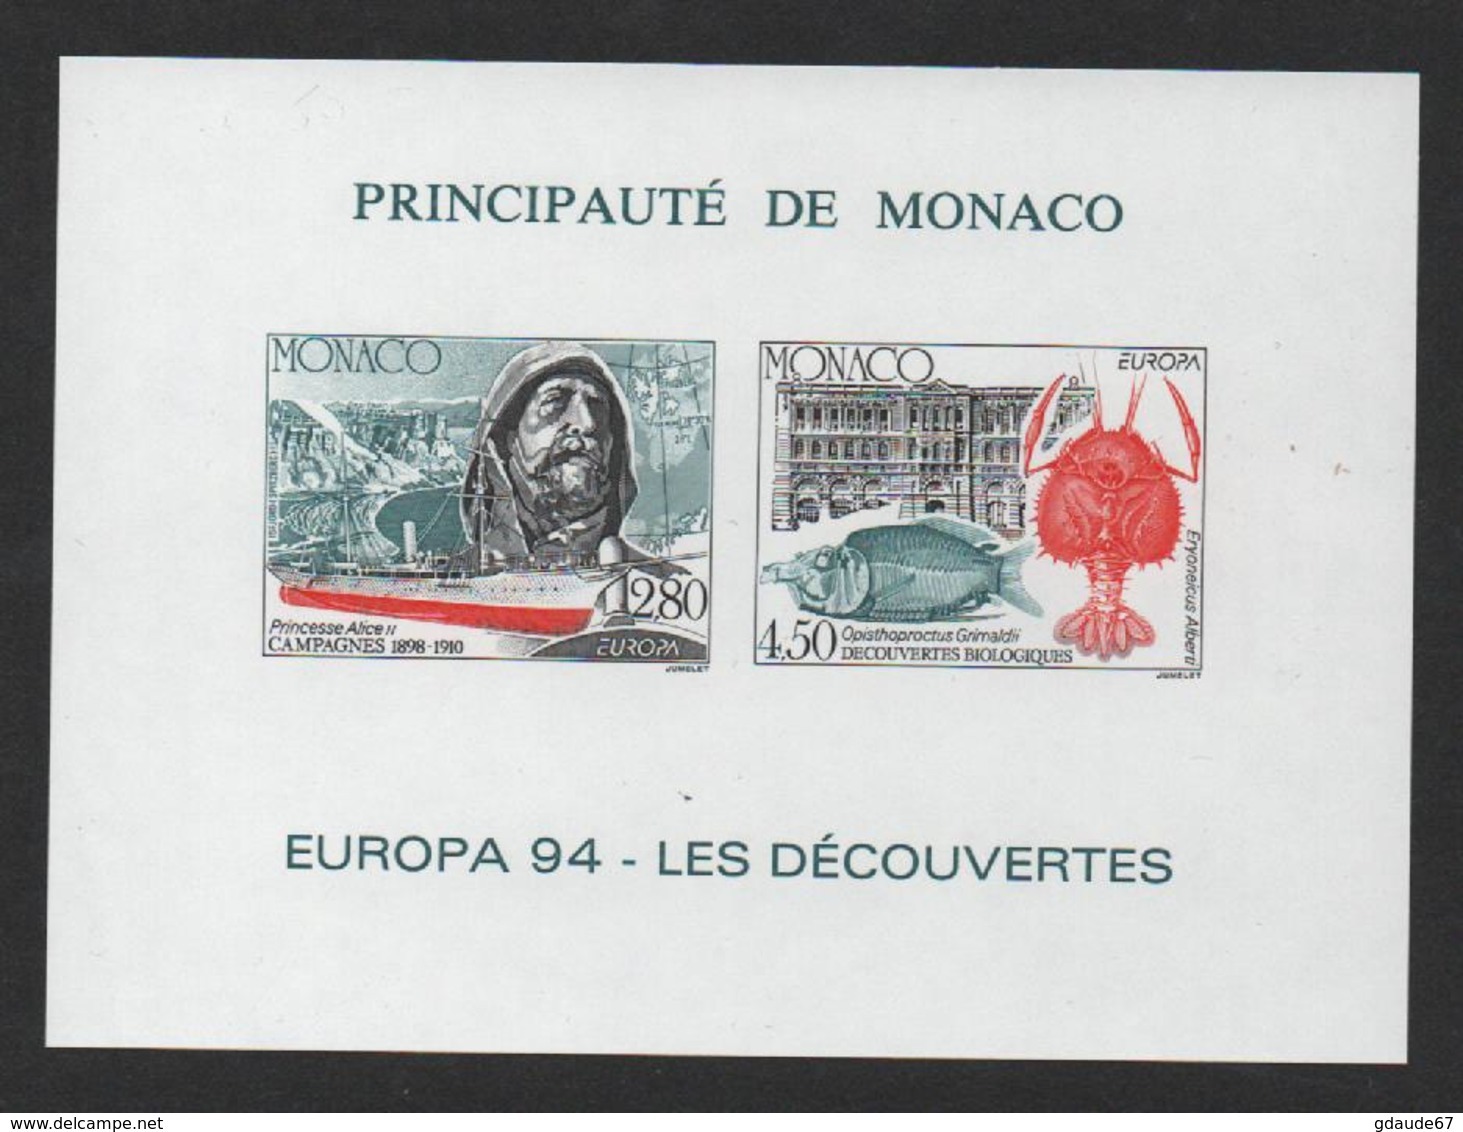 MONACO EUROPA 1994 - BLOC FEUILLET SPECIAL NON DENTELE - N° 23a ** MNH - COTE 230 EUR - Blocs